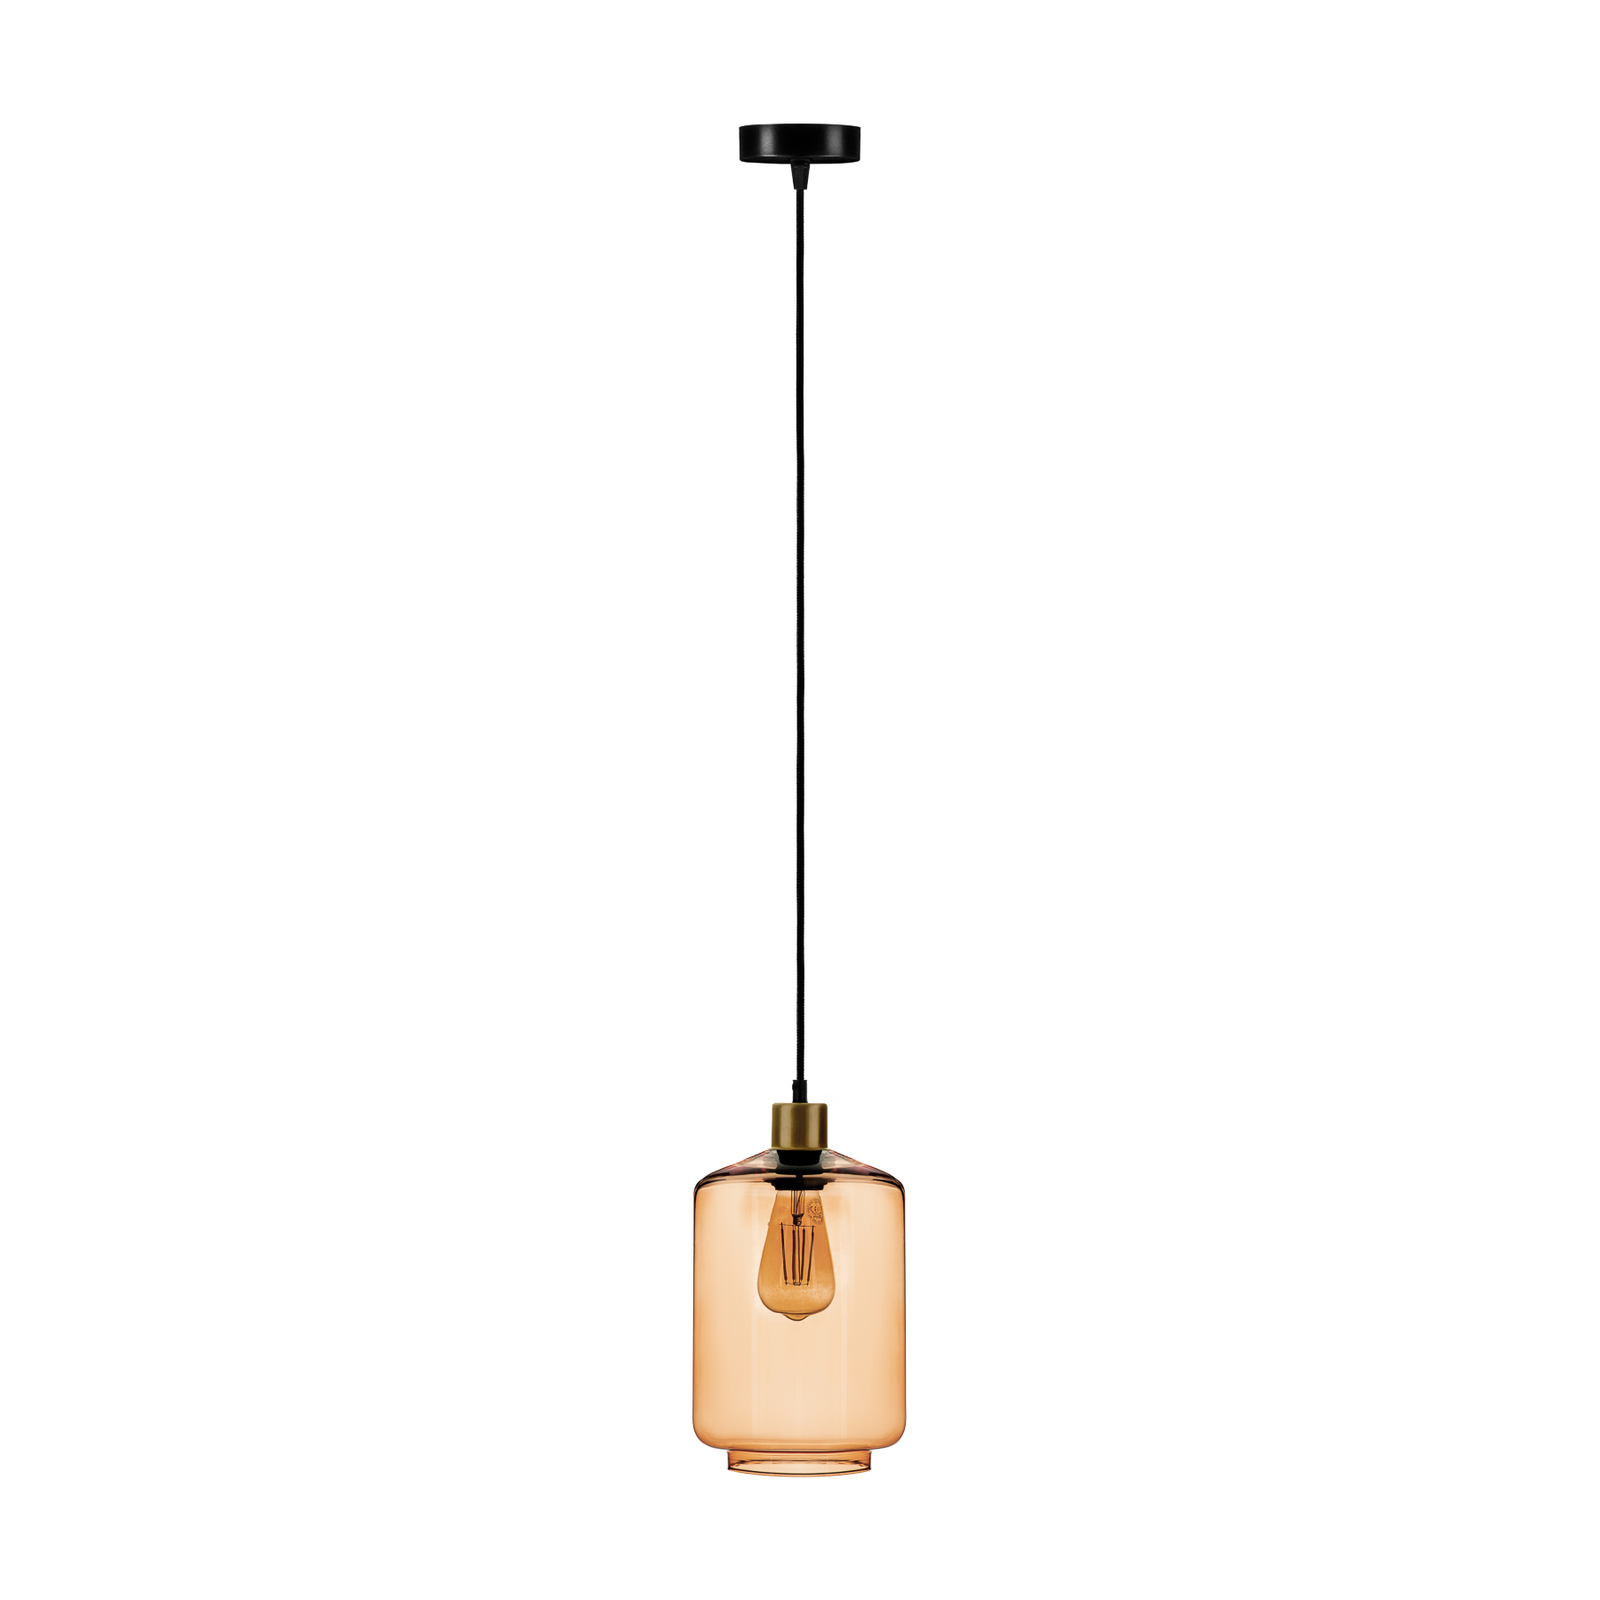 Lampada a sospensione a tubo con paralume in vetro marrone chiaro Ø 17cm